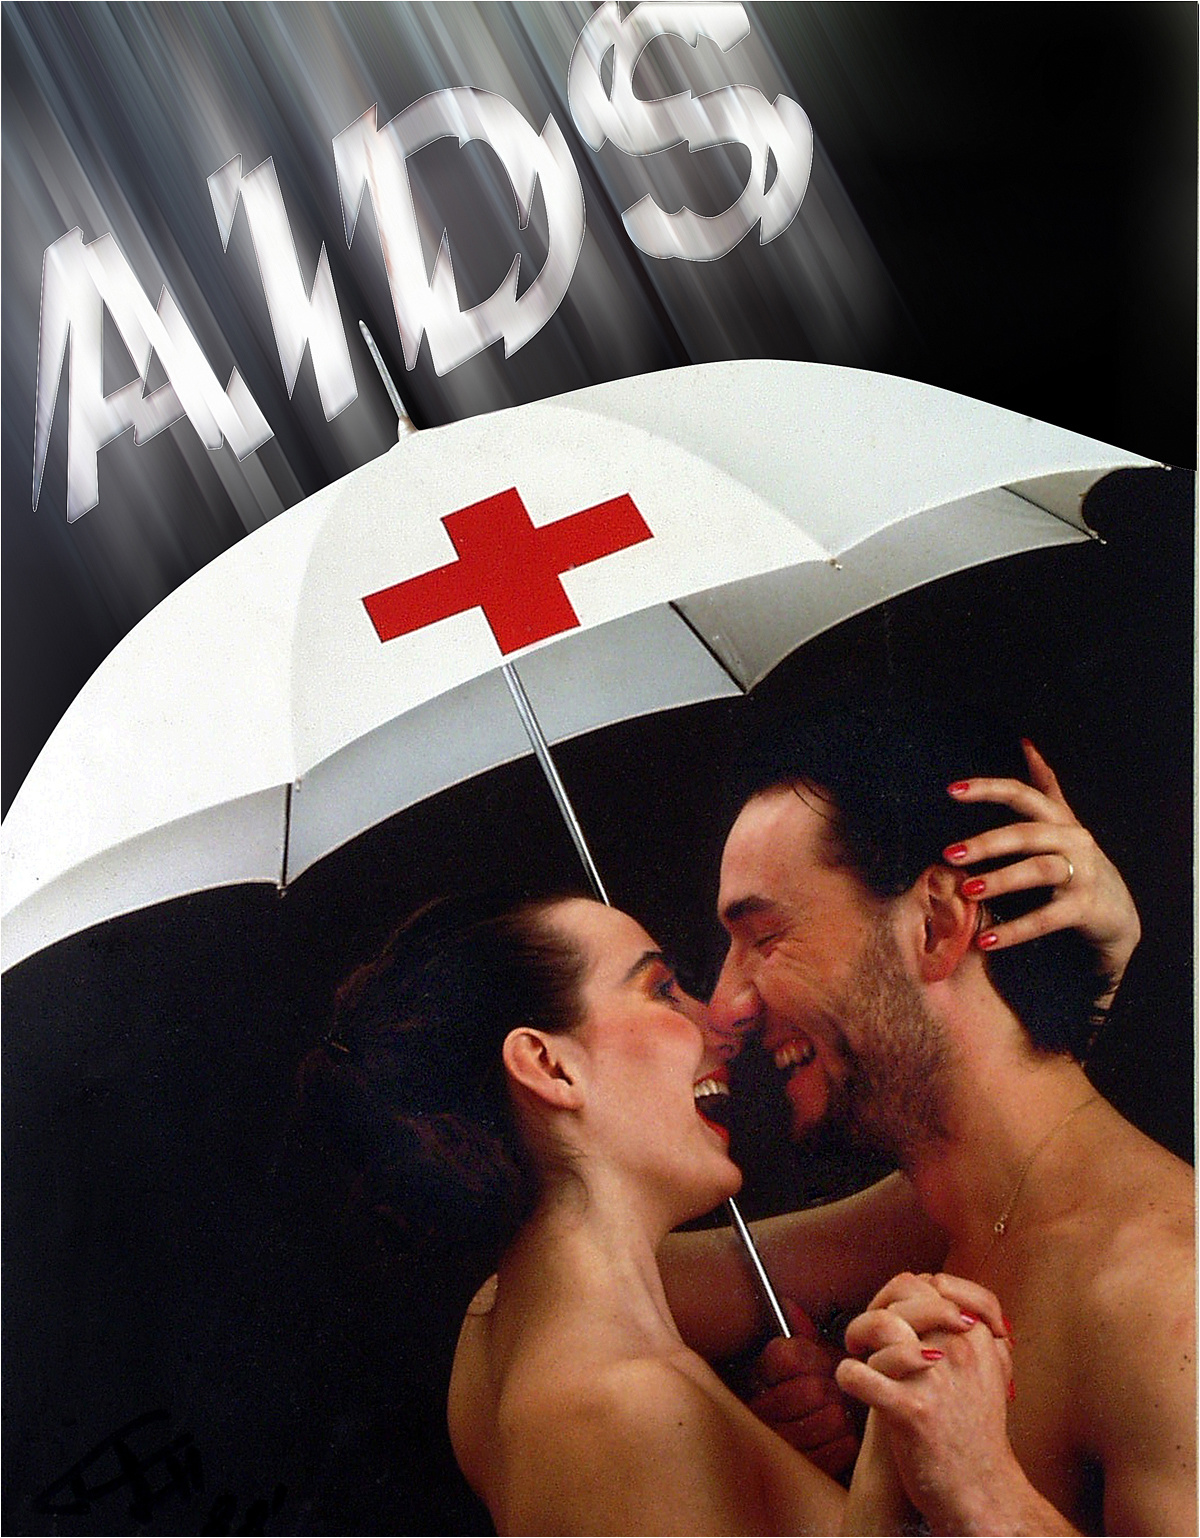 No AIDS